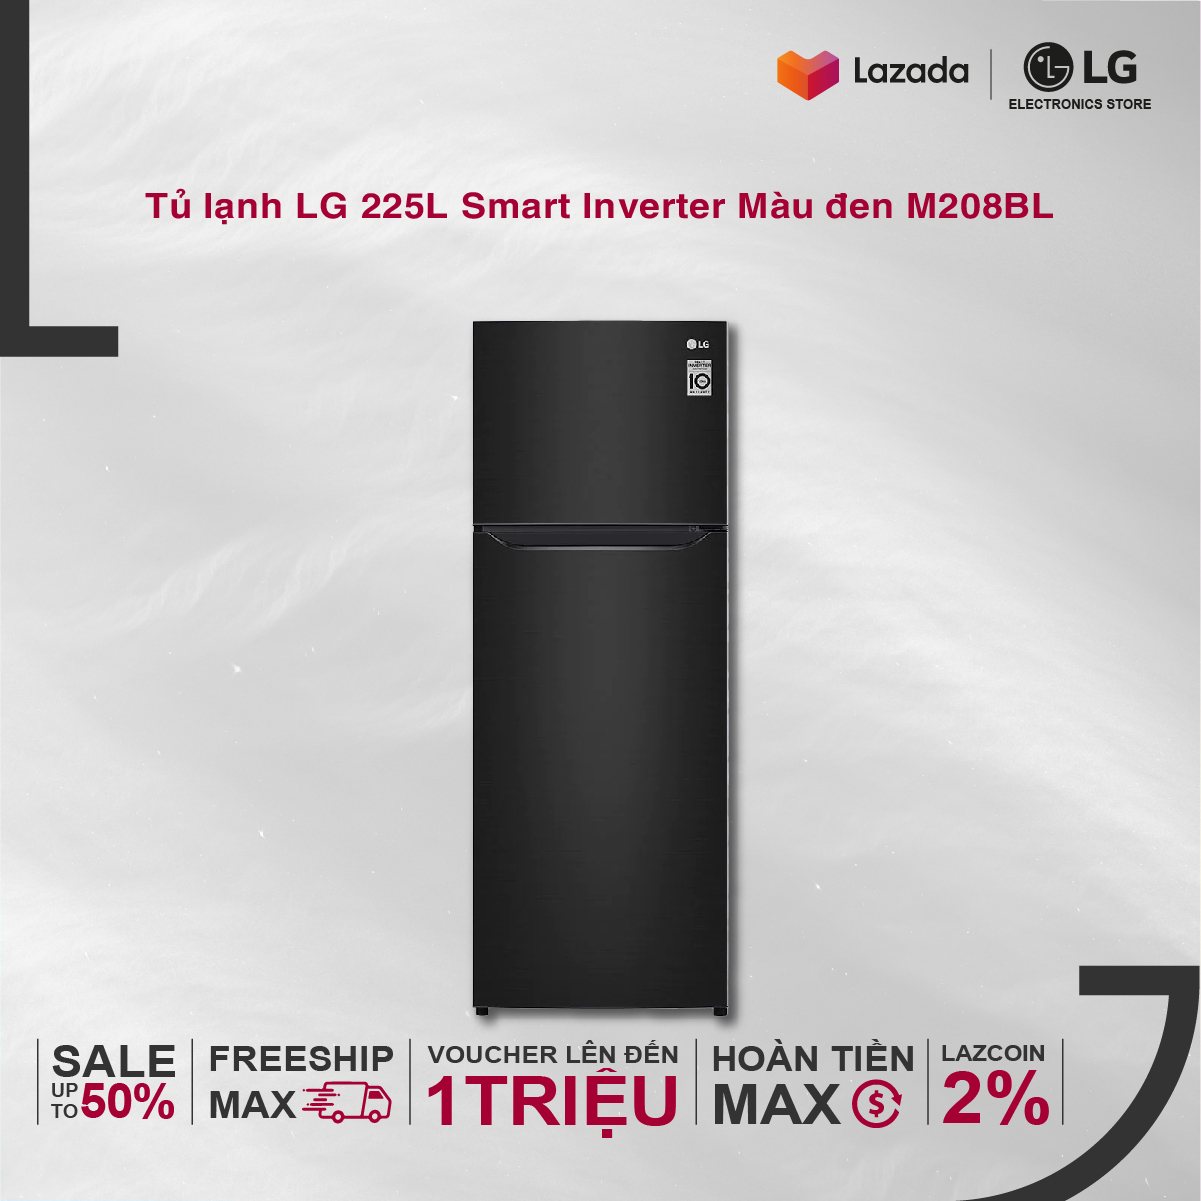 [Miễn phí giao + lắp][VOUCHER upto 1 triệu][Trả góp] Tủ lạnh LG Smart Inverter GN-M208BL 225L (Đen) 55.5 x 152...